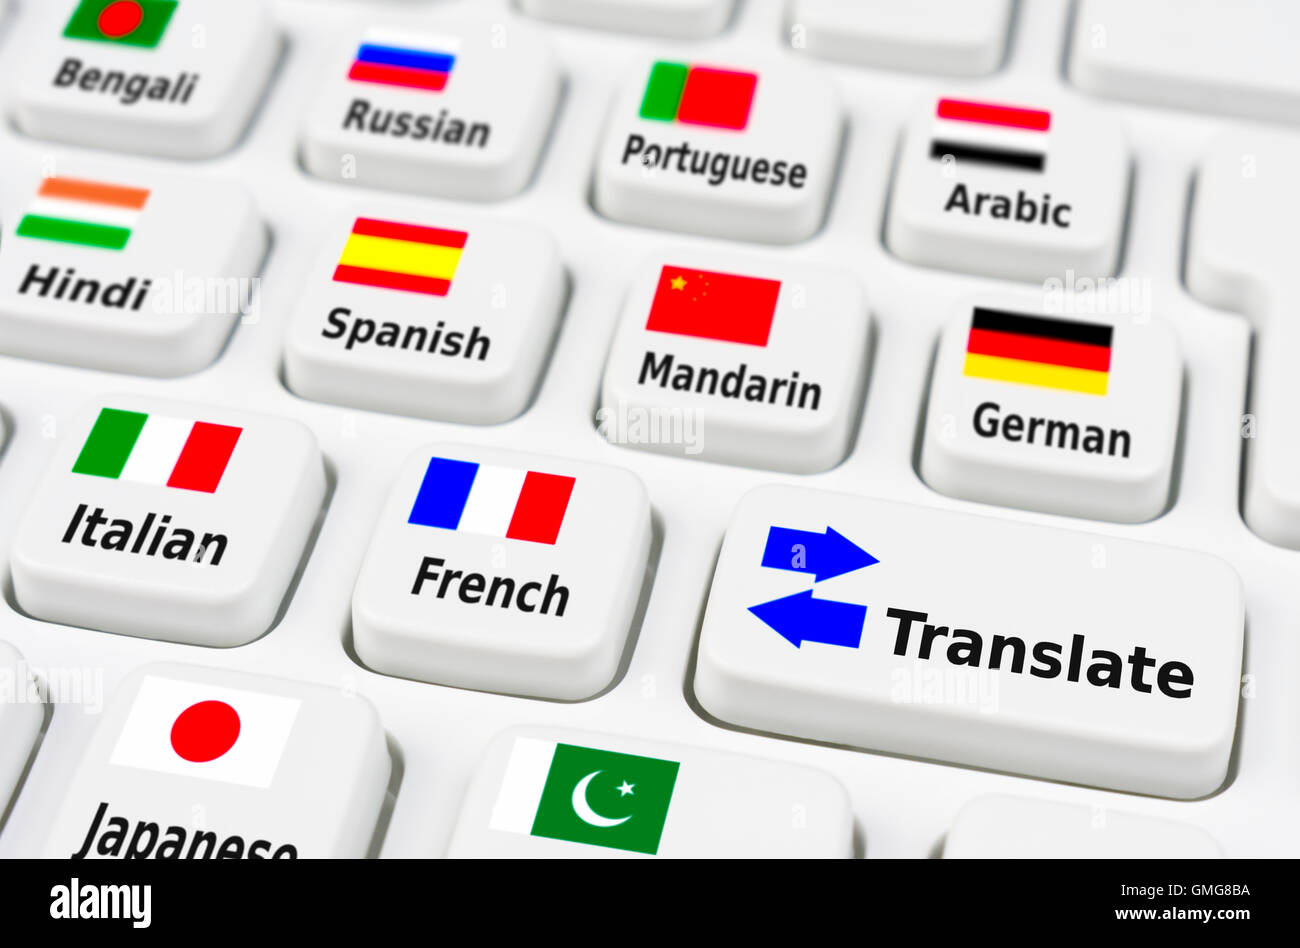 Language translation using a computer keyboard. Stock Photo